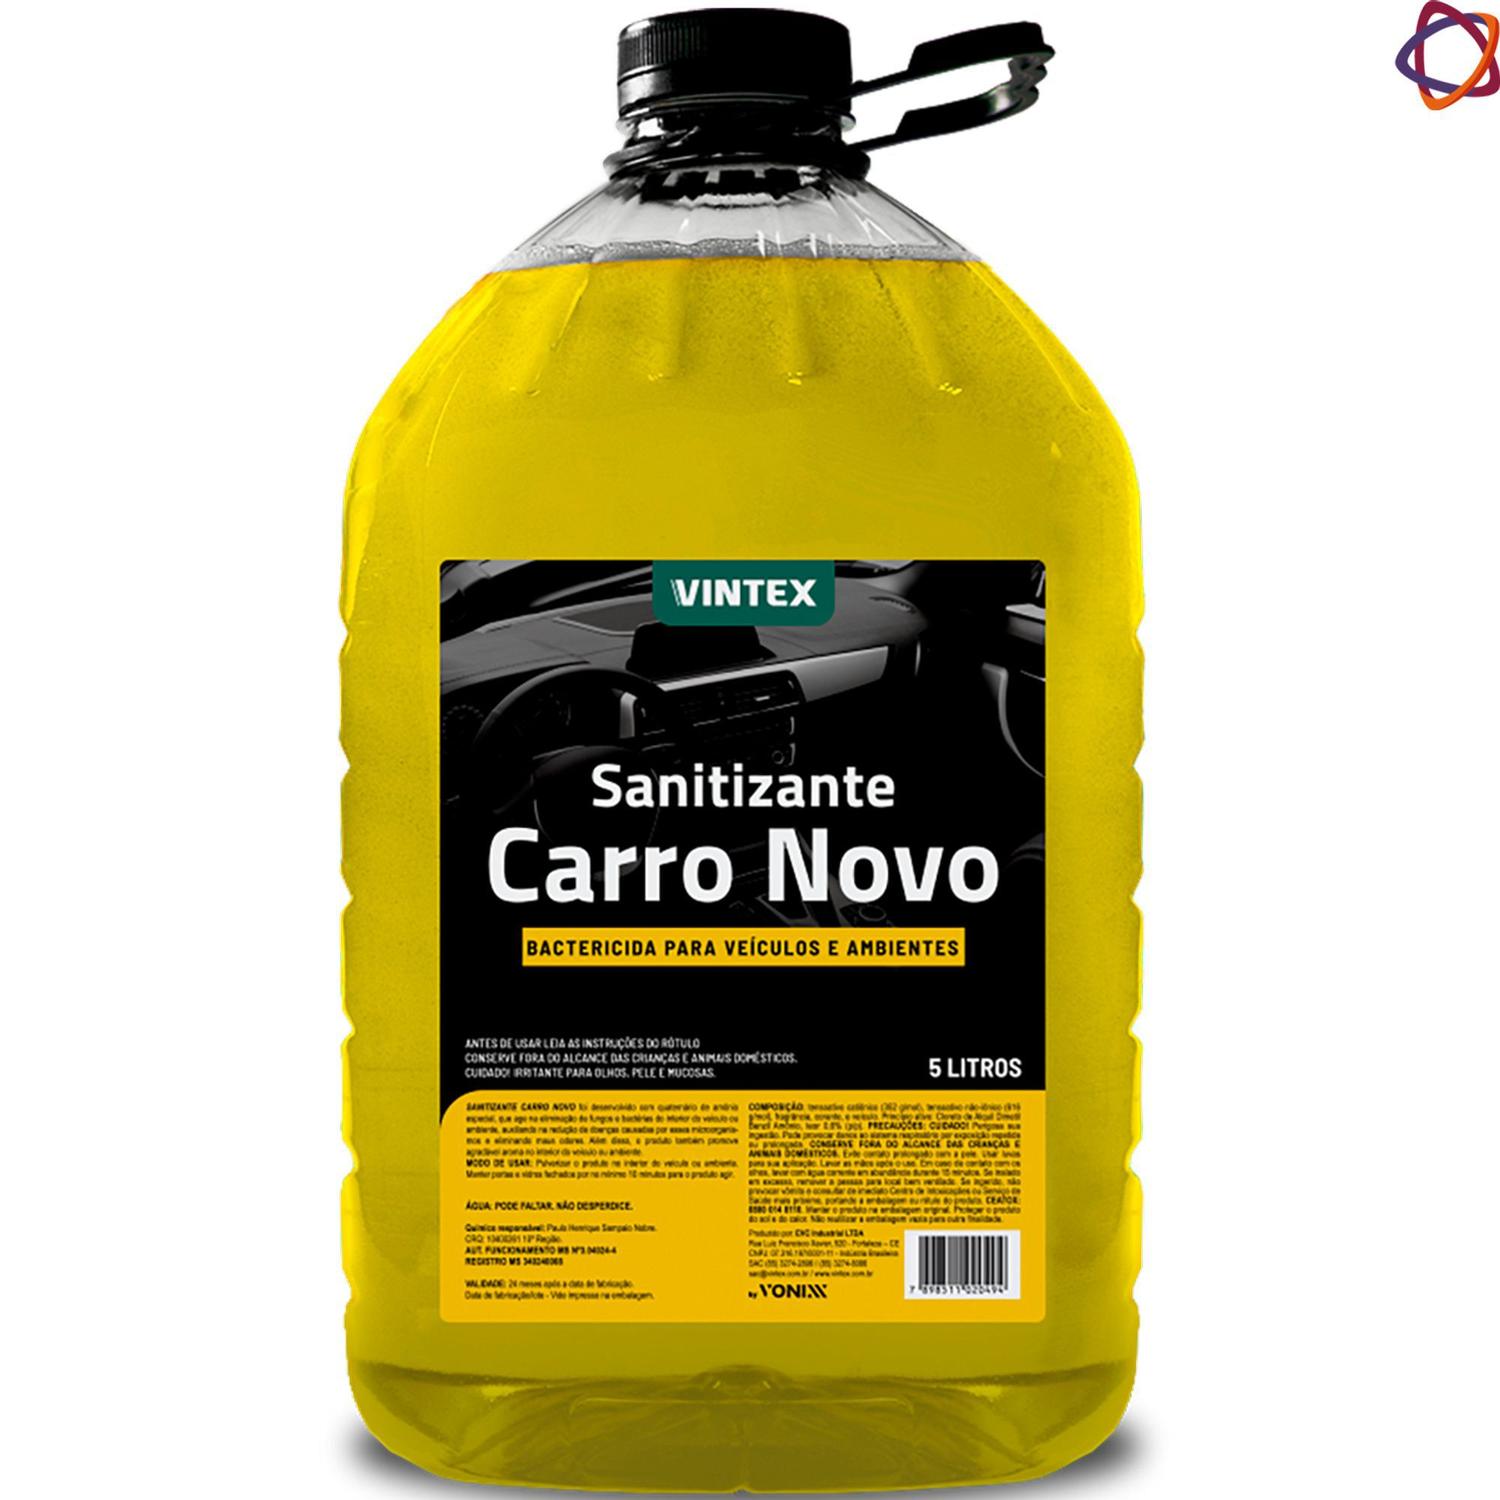 Sanitizante Carro Novo - 5L - Vintex/Vonixx